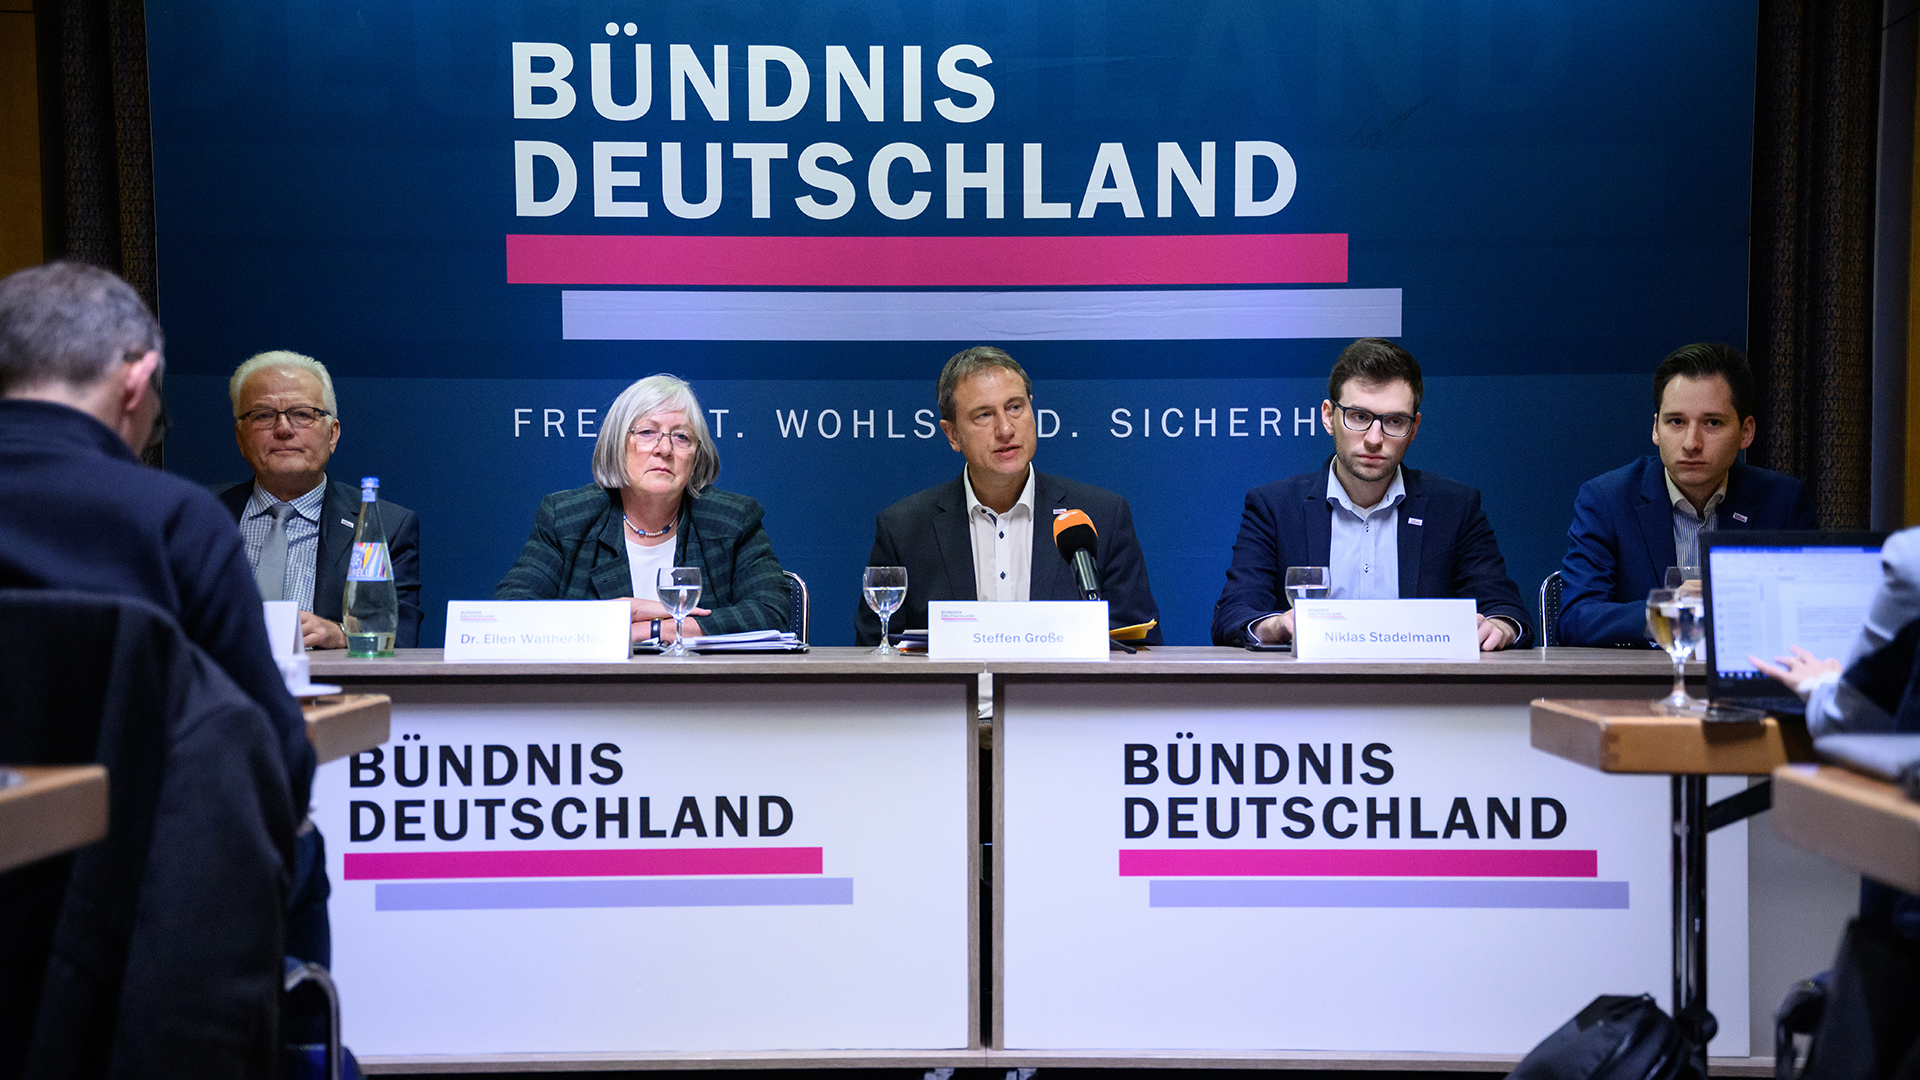 „Bündnis Deutschland”: powstała nowa partia konserwatywna